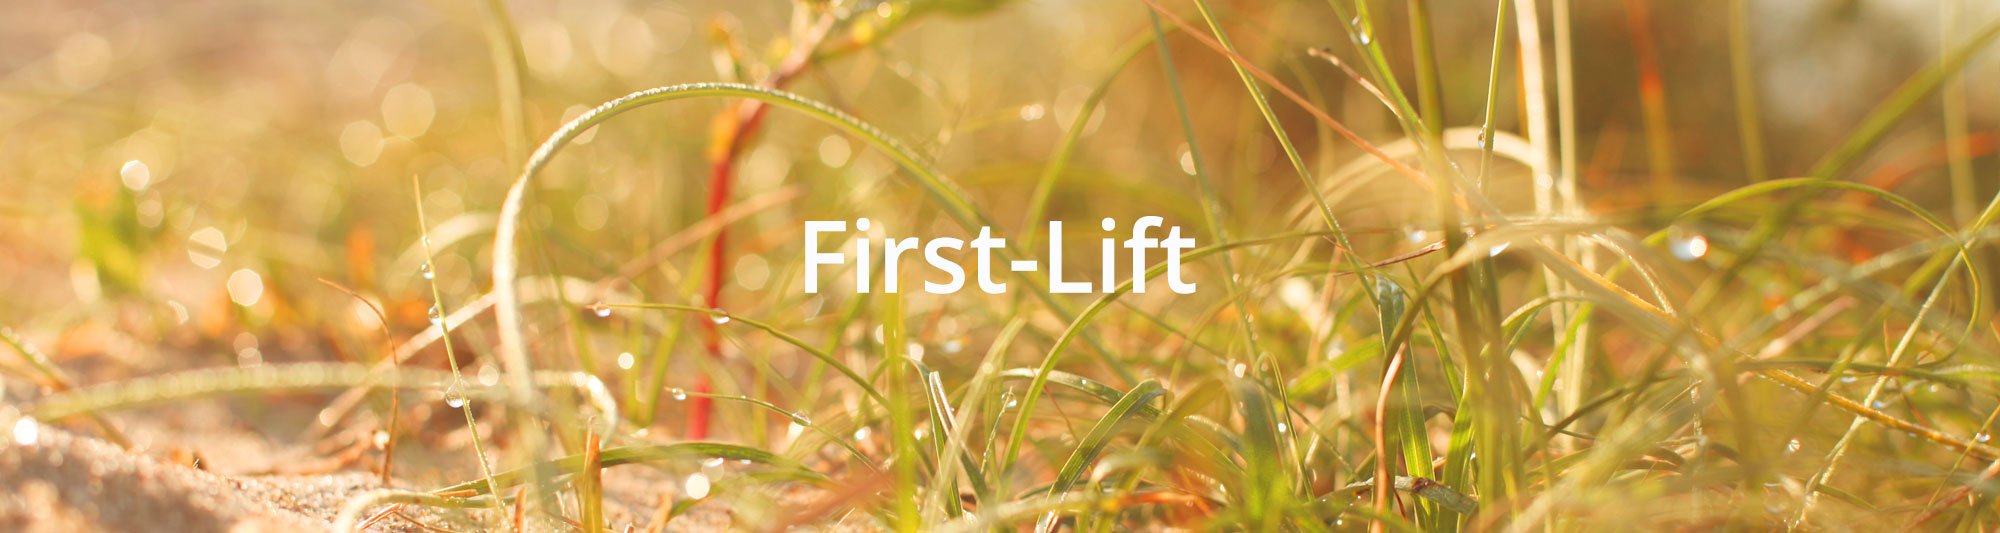 First-Lift